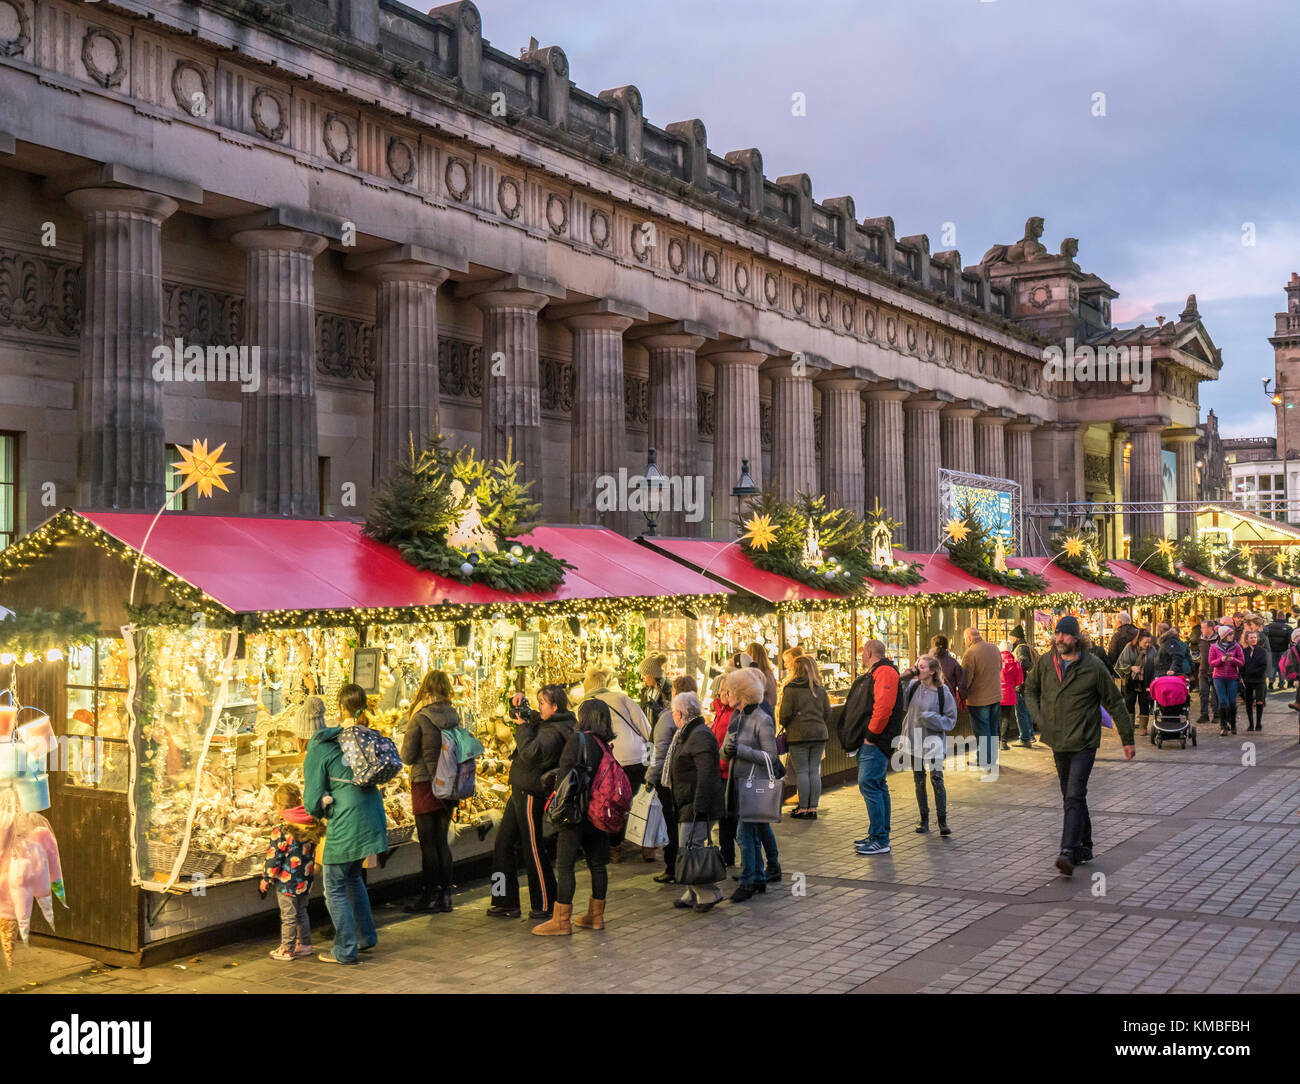 Am Abend Blick auf die Kirmes am jährlichen Weihnachtsmarkt in Edinburgh, Schottland, Vereinigtes Königreich Stockfoto